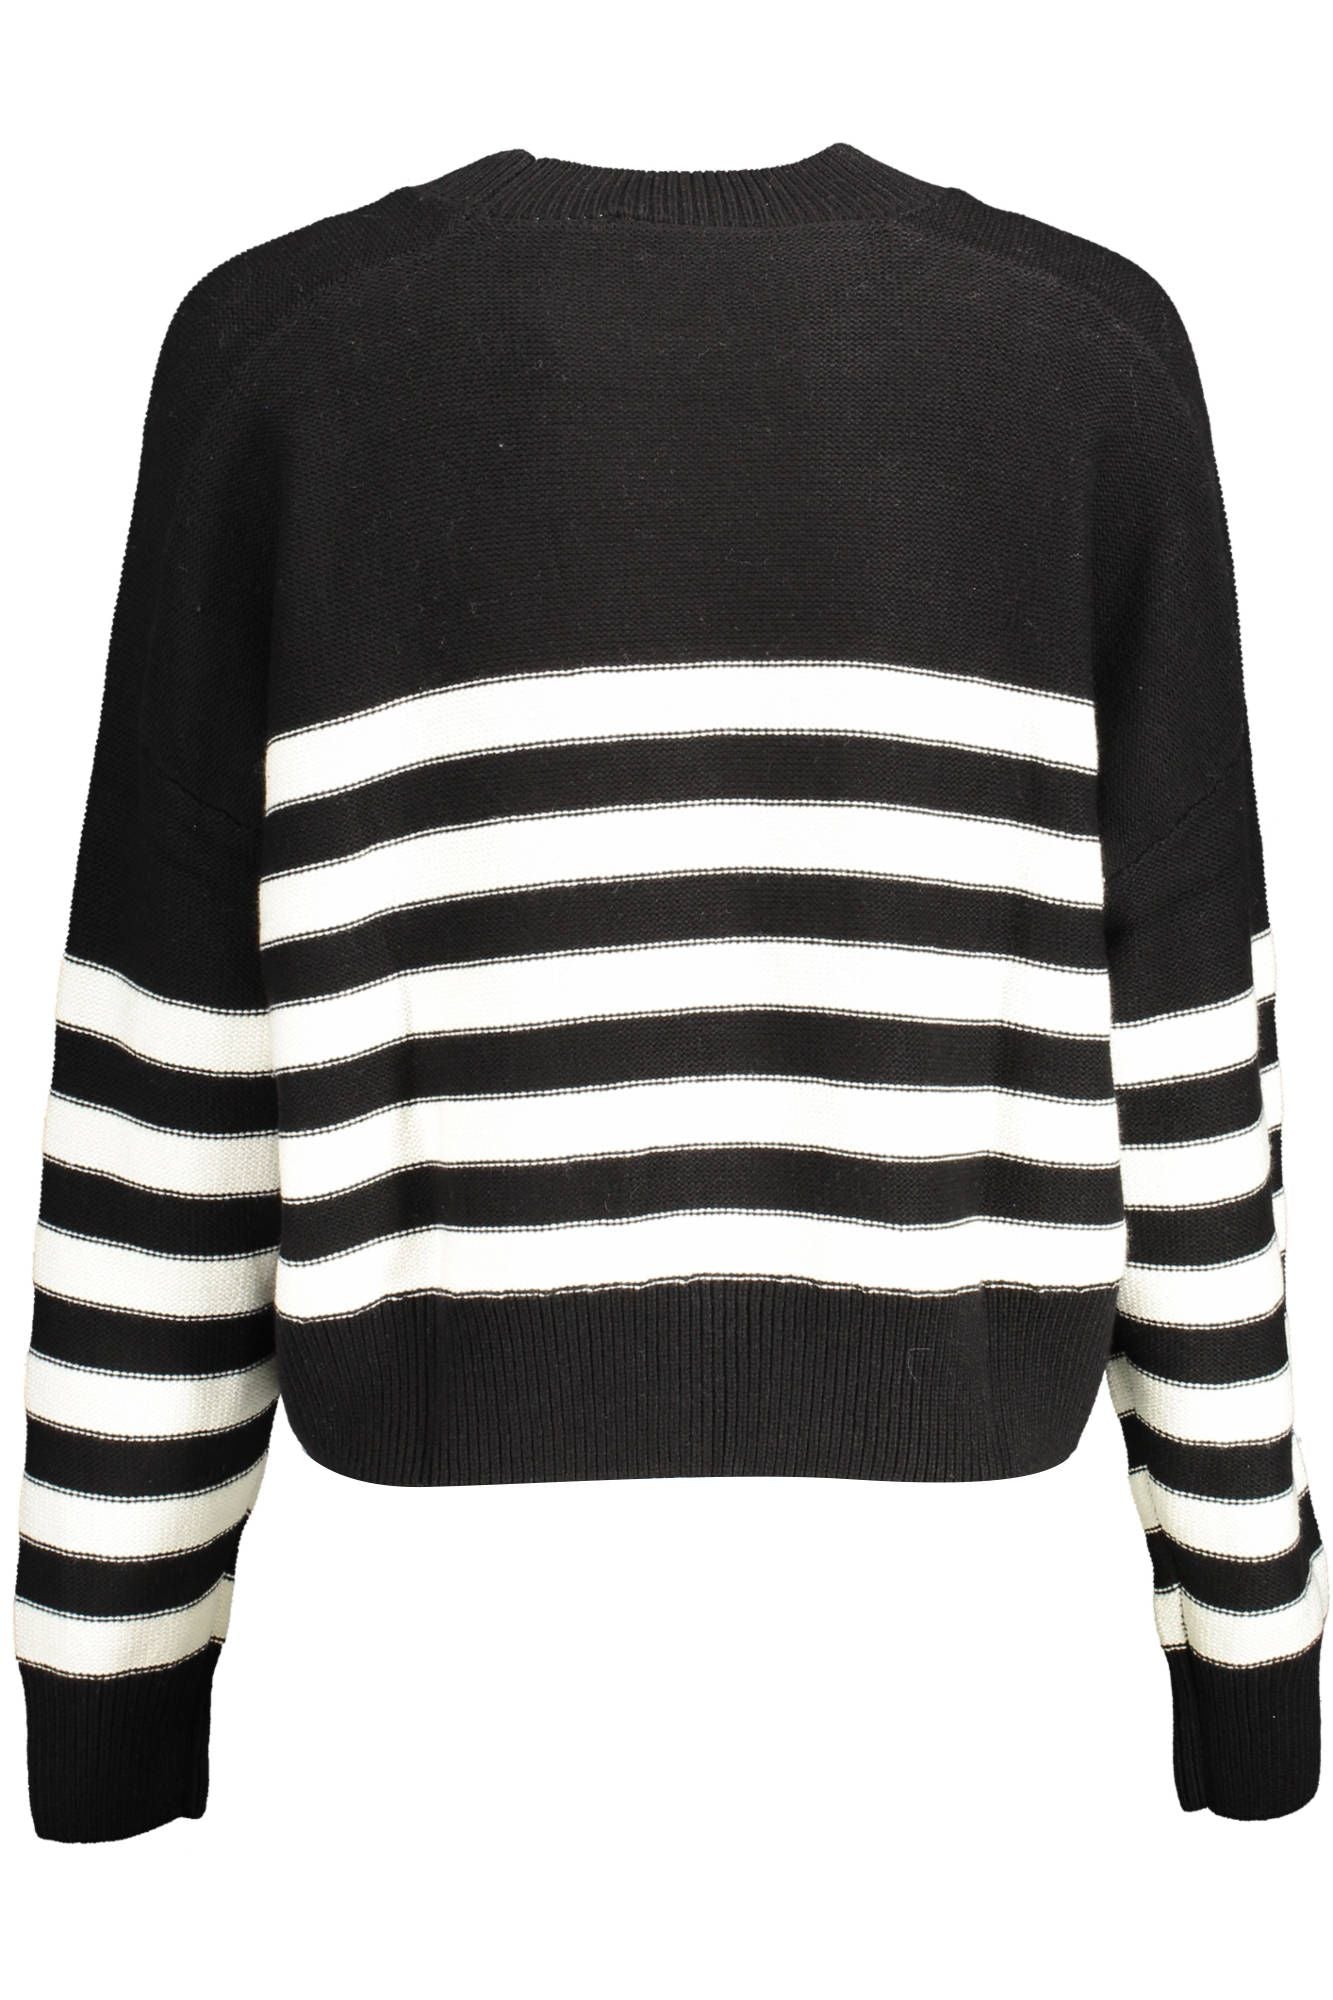 Desigual Women's Black Cotton Round Neck Sweater